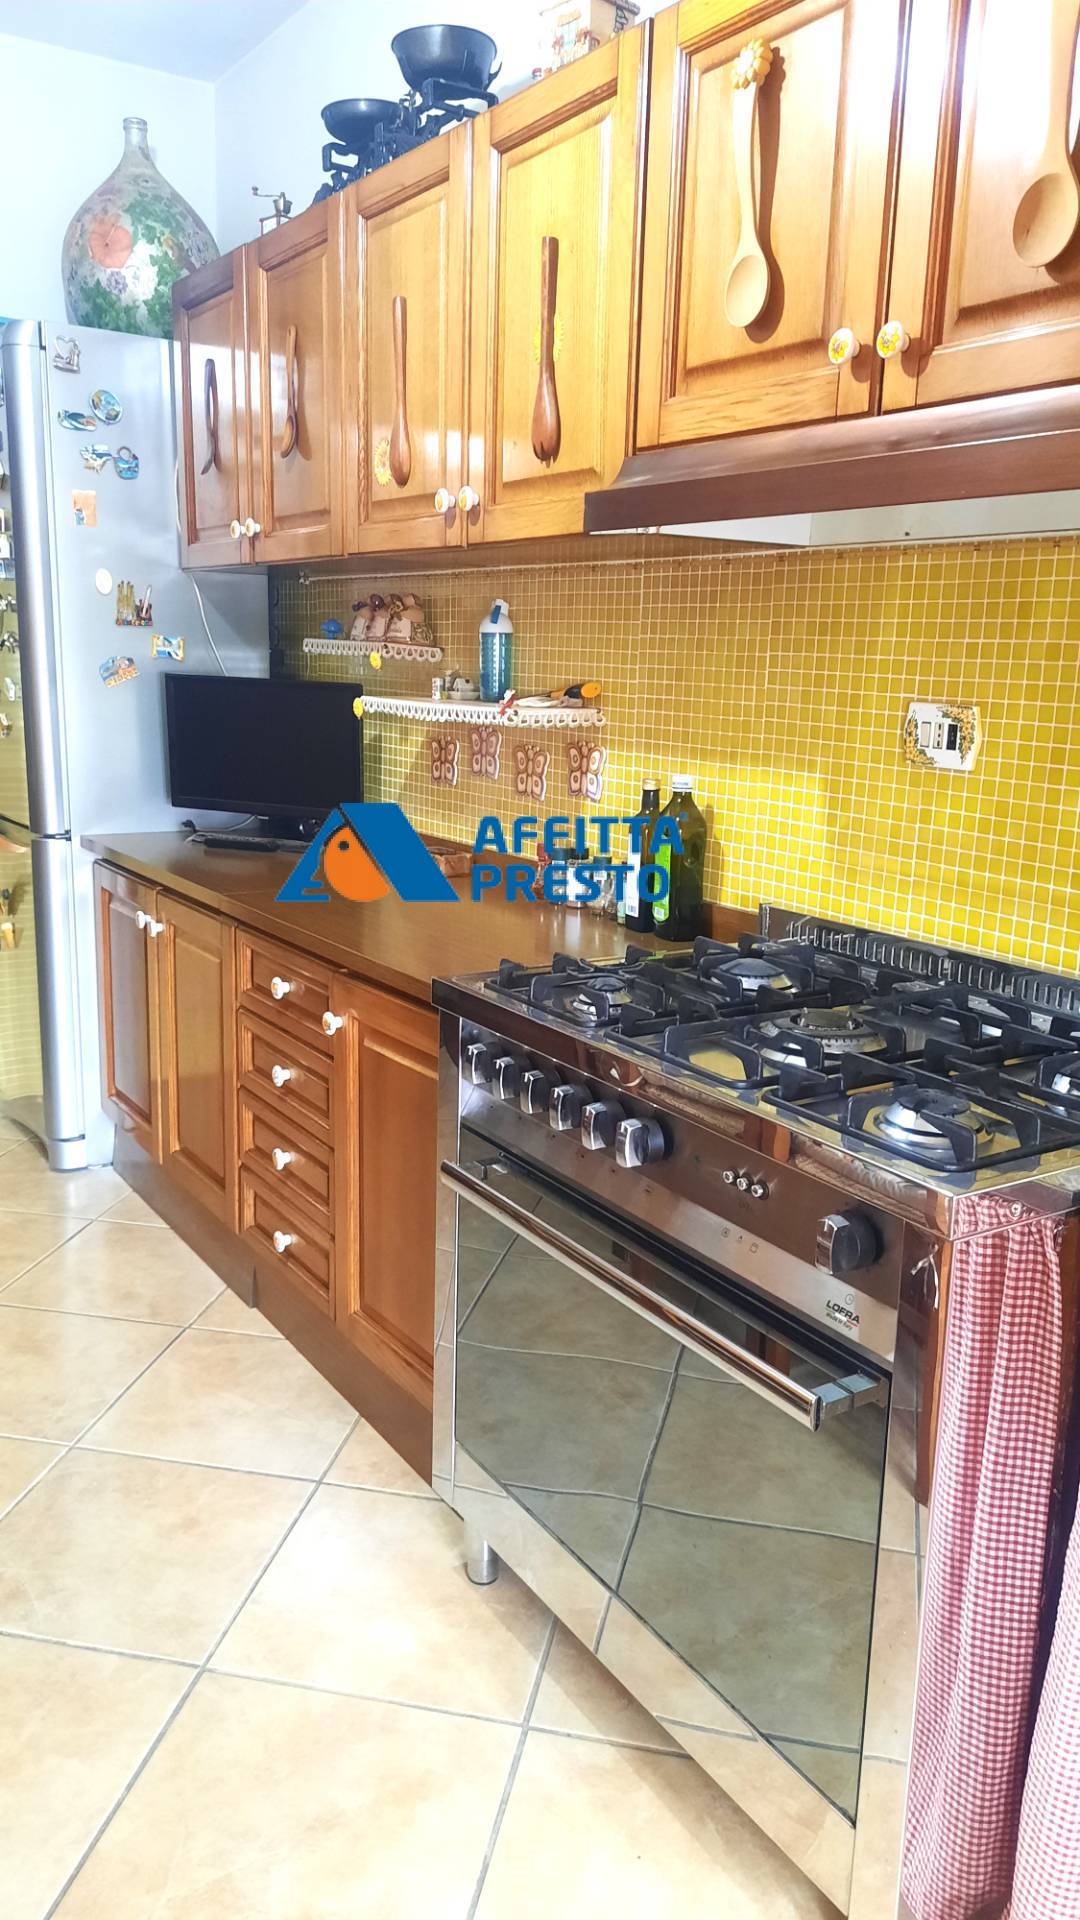 Appartamento in affitto a Venarotta, 4 locali, prezzo € 450 | CambioCasa.it